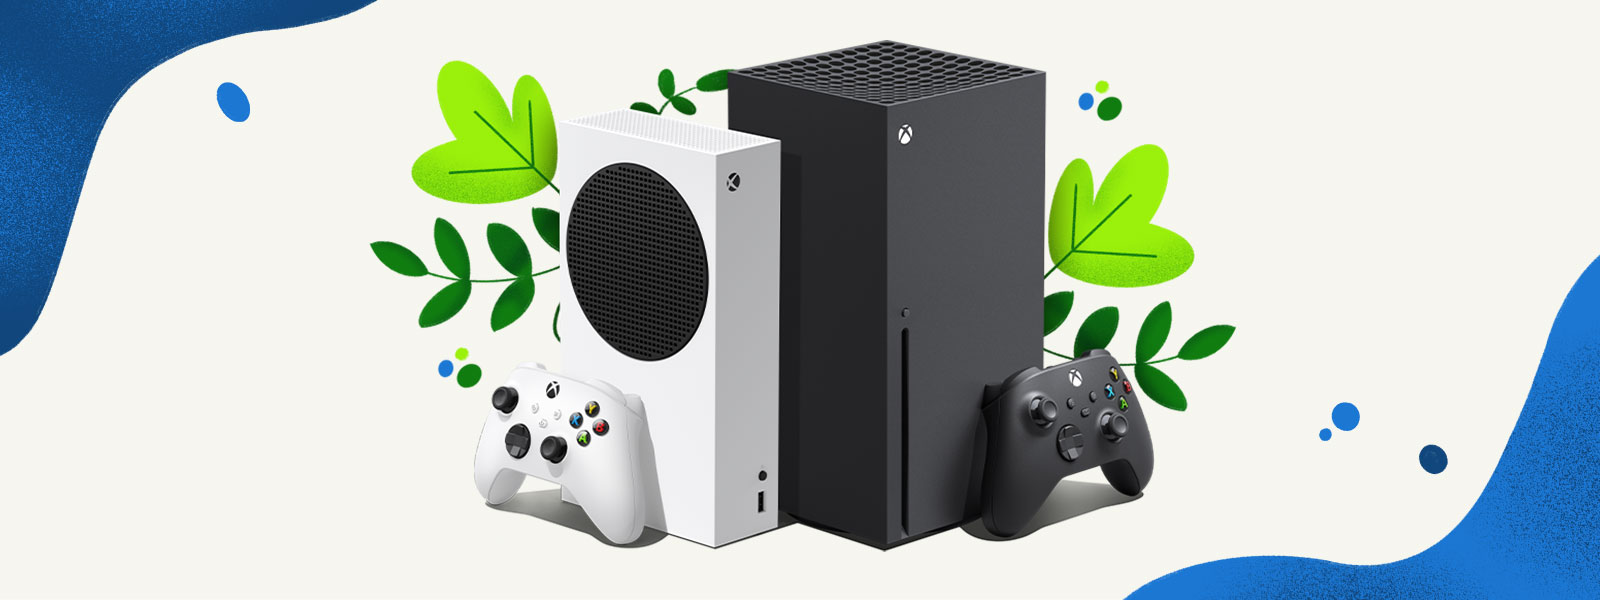 Die Xbox Series X- und Xbox Series S-Konsolen stehen nebeneinander vor einem dekorativen Hintergrund aus Pflanzen und blauen Wasserspritzern.